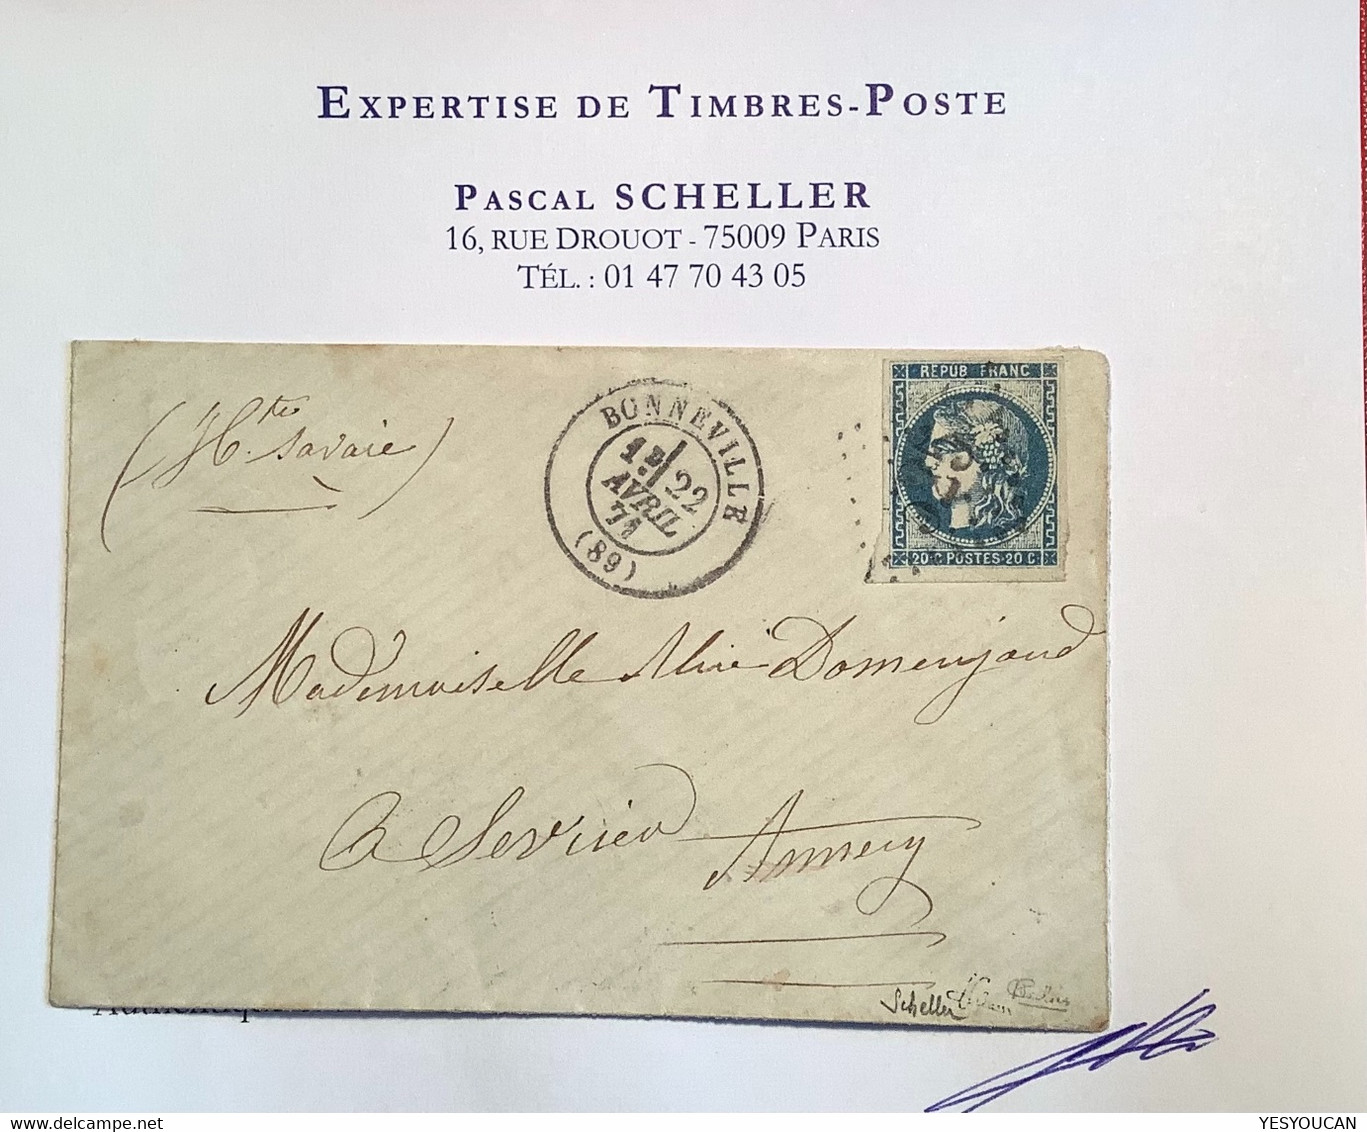 #46Ad TTB NUANCE RARE BLEU-OUTREMER Lettre BONNEVILLE1871(89 Hte Savoie)20c Bordeaux T.III, Rep.1 Cert. Scheller (France - 1870 Emisión De Bordeaux